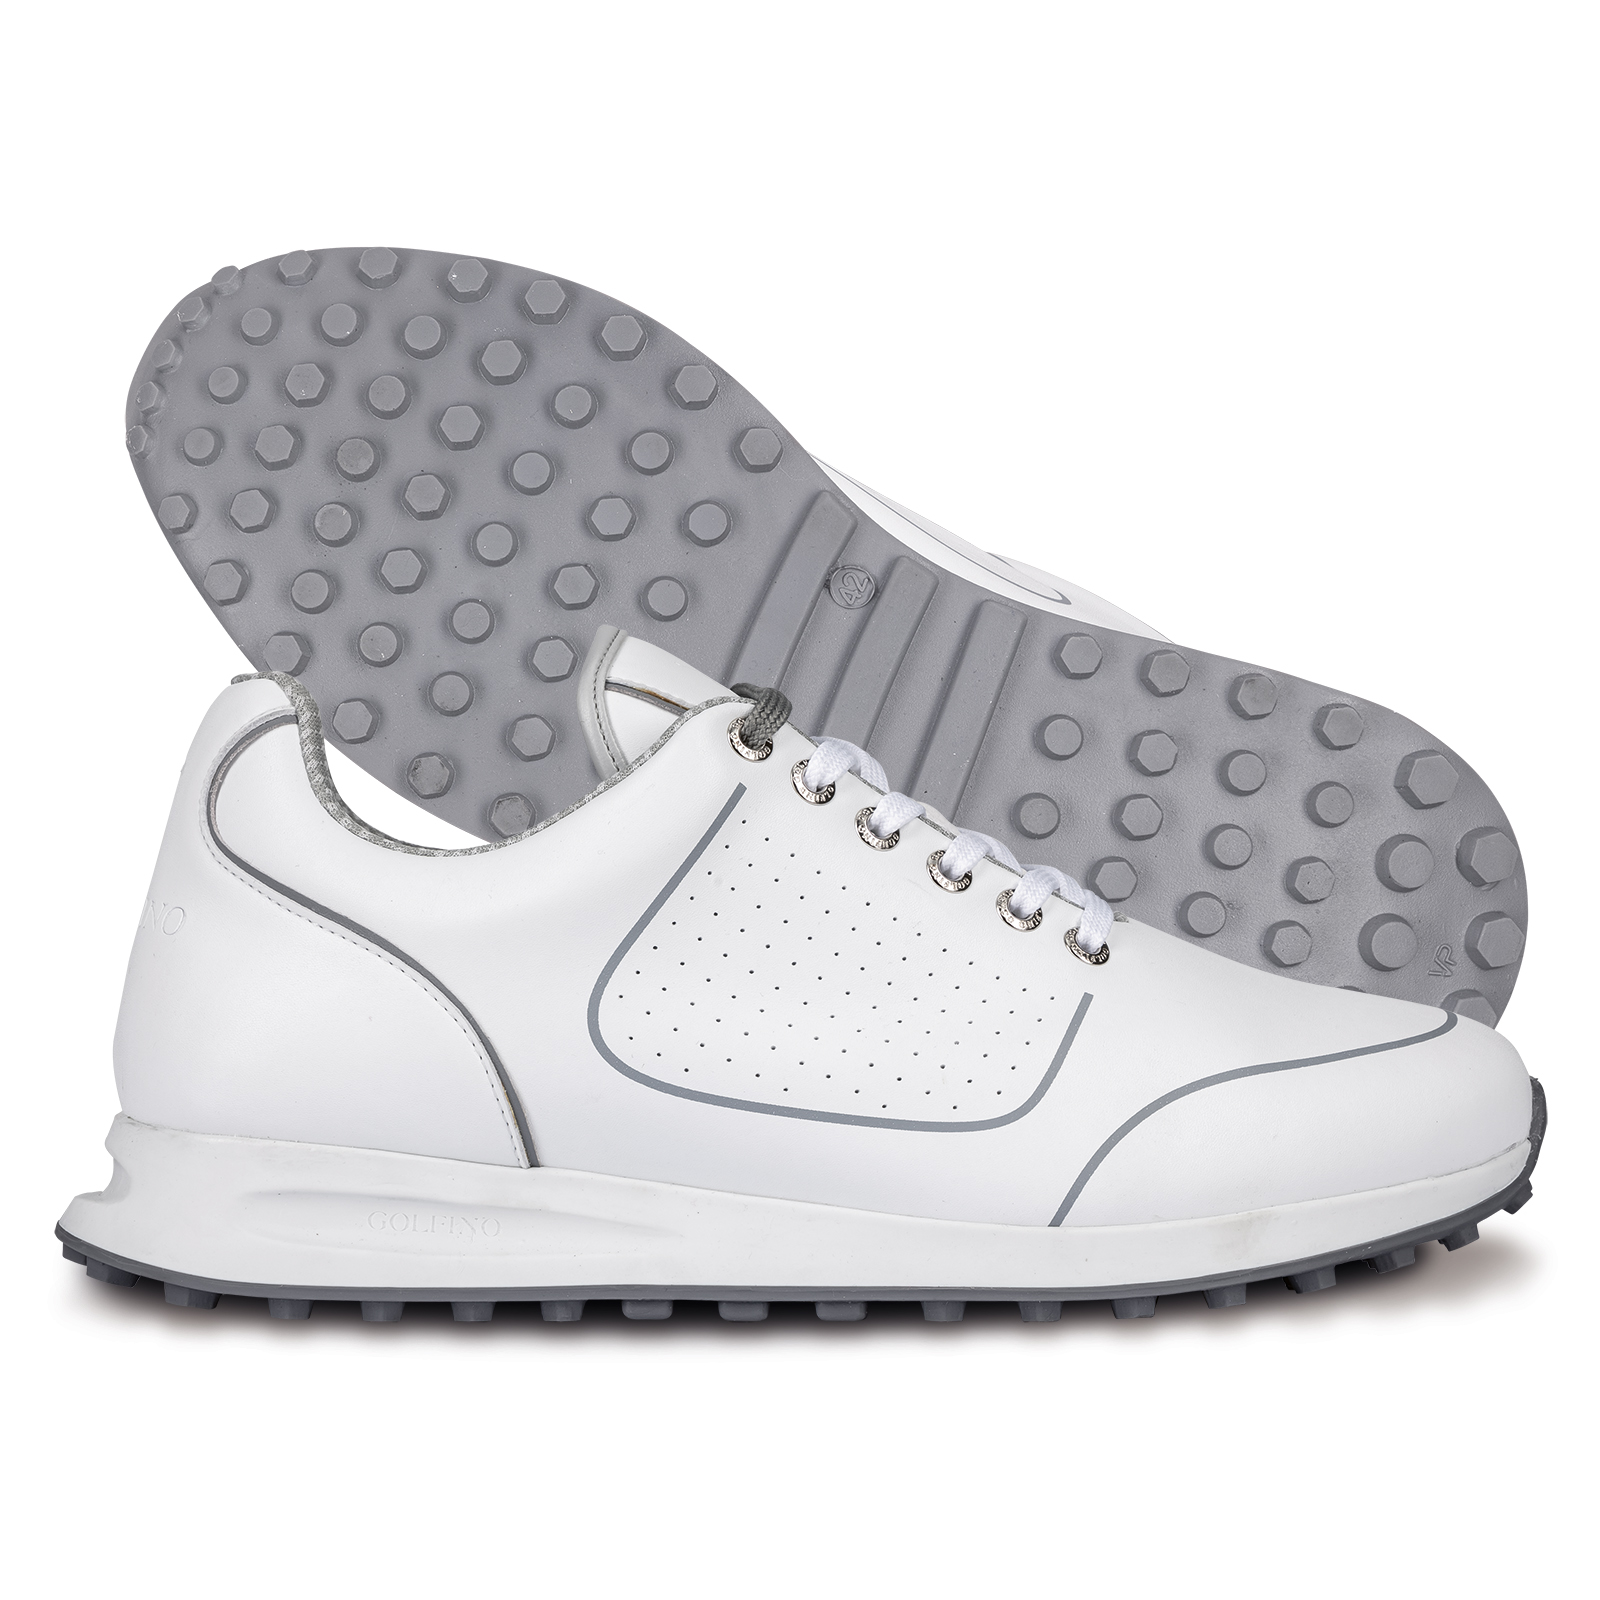 Zapatos de golf deportivos de cuero vegano de fácil cuidado para hombre